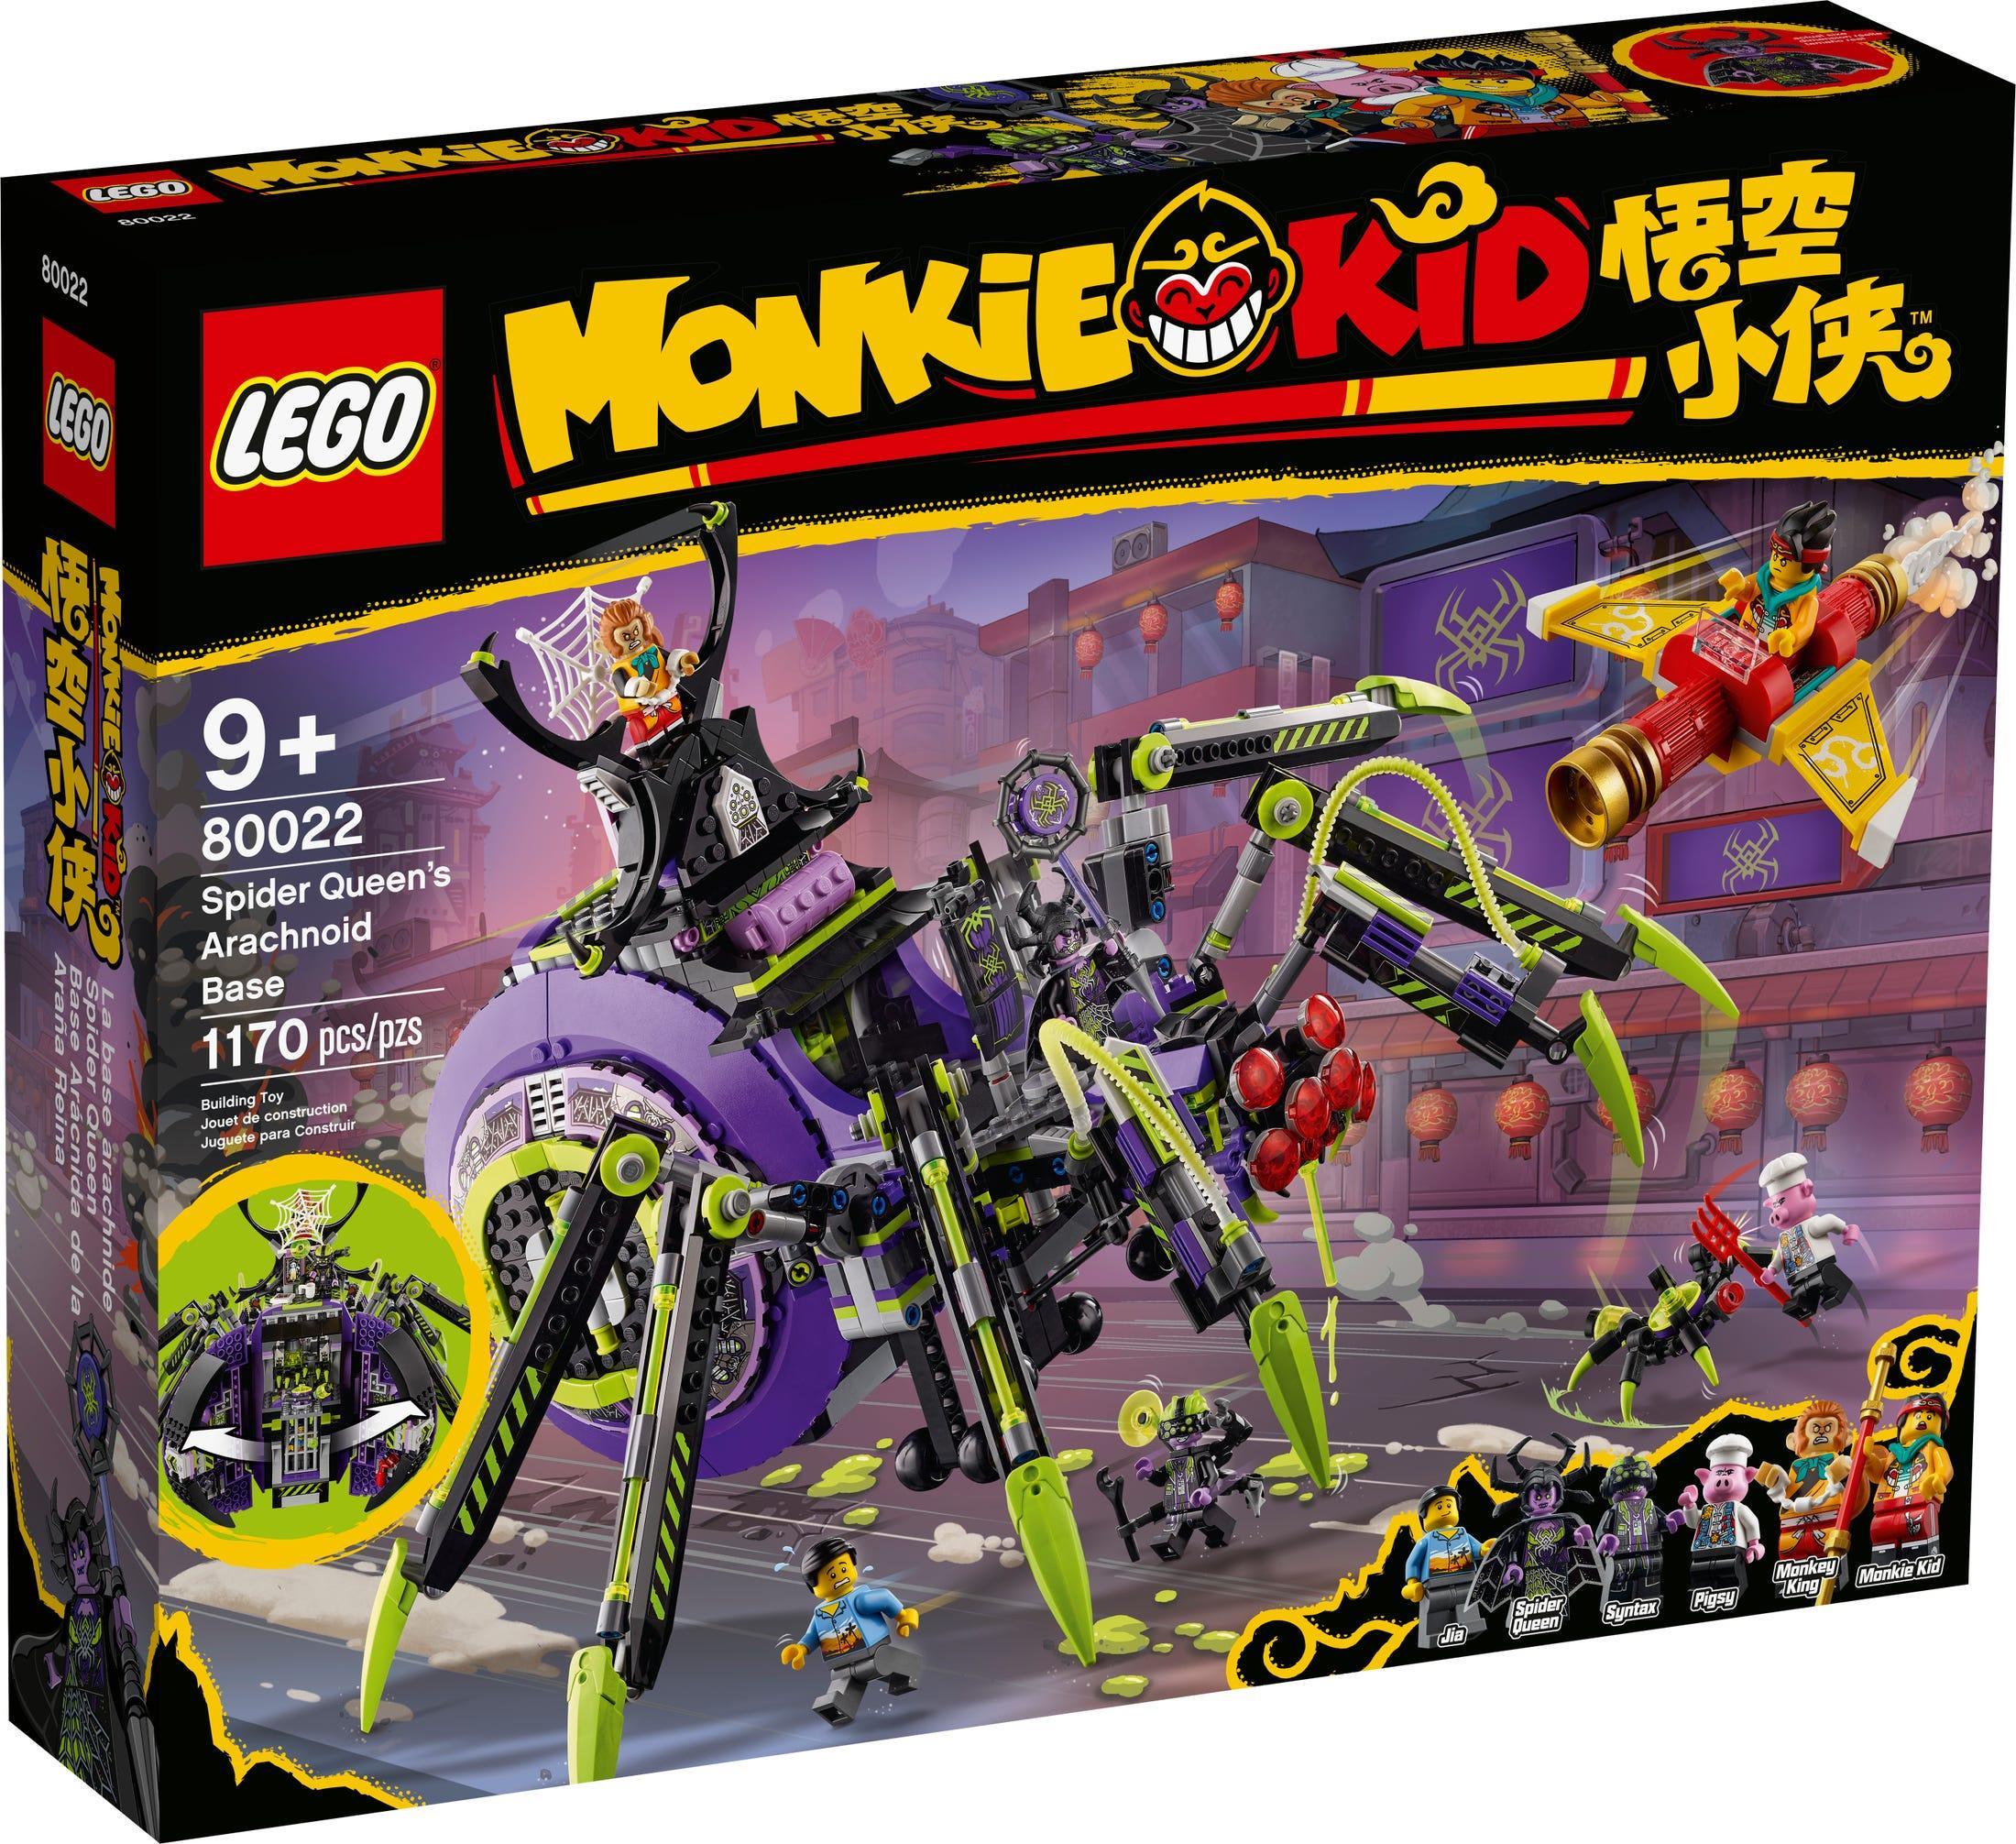 LEGO 80022 Spider Queen's Arachnoid Base - Monkie Kid